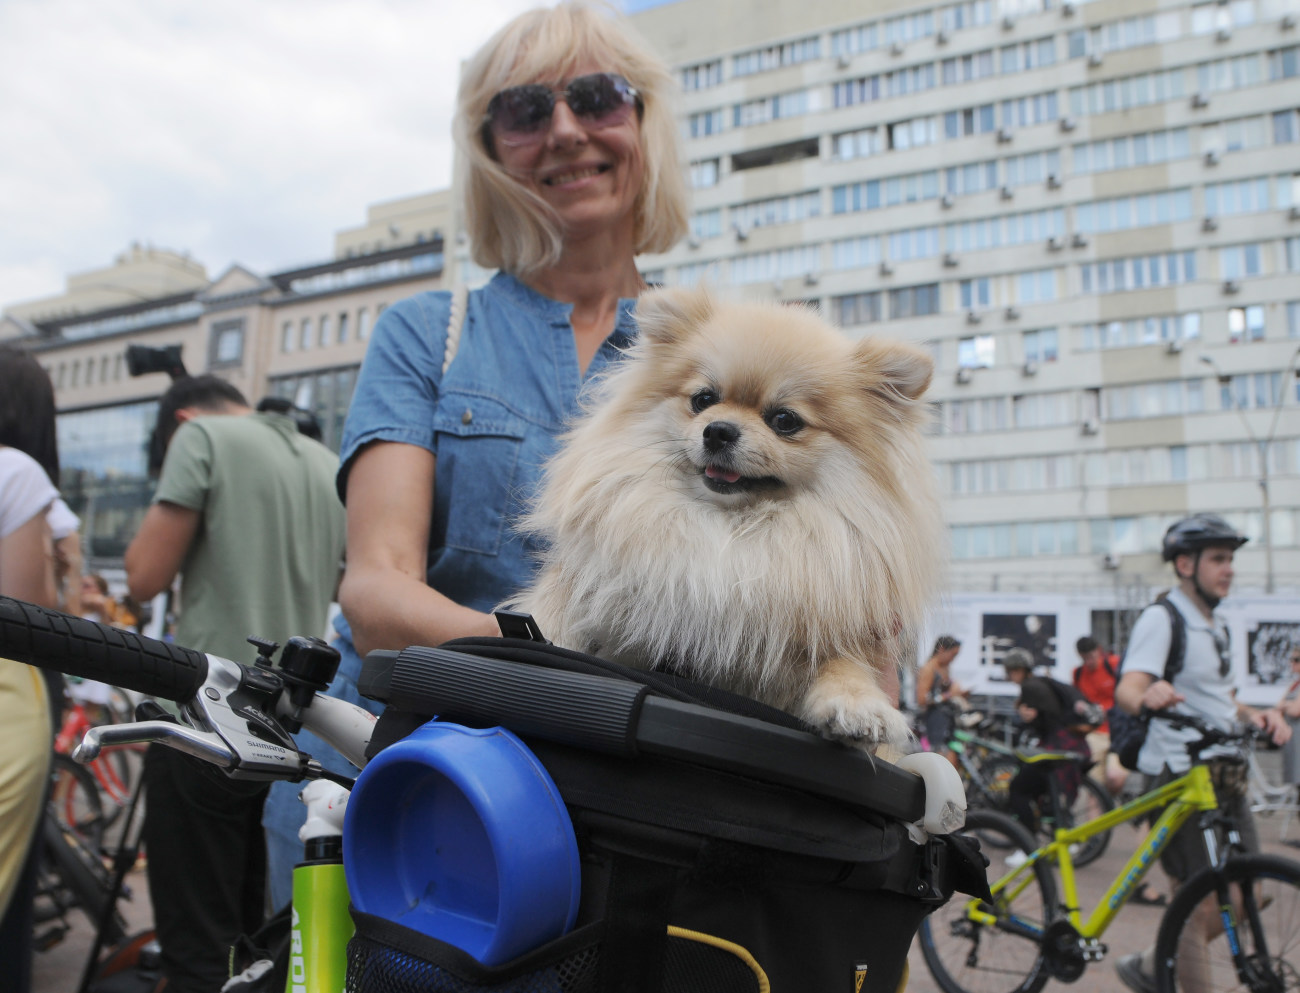 В Киеве состоялся ежегодный велопарад девушек Kyiv Cycle Chic